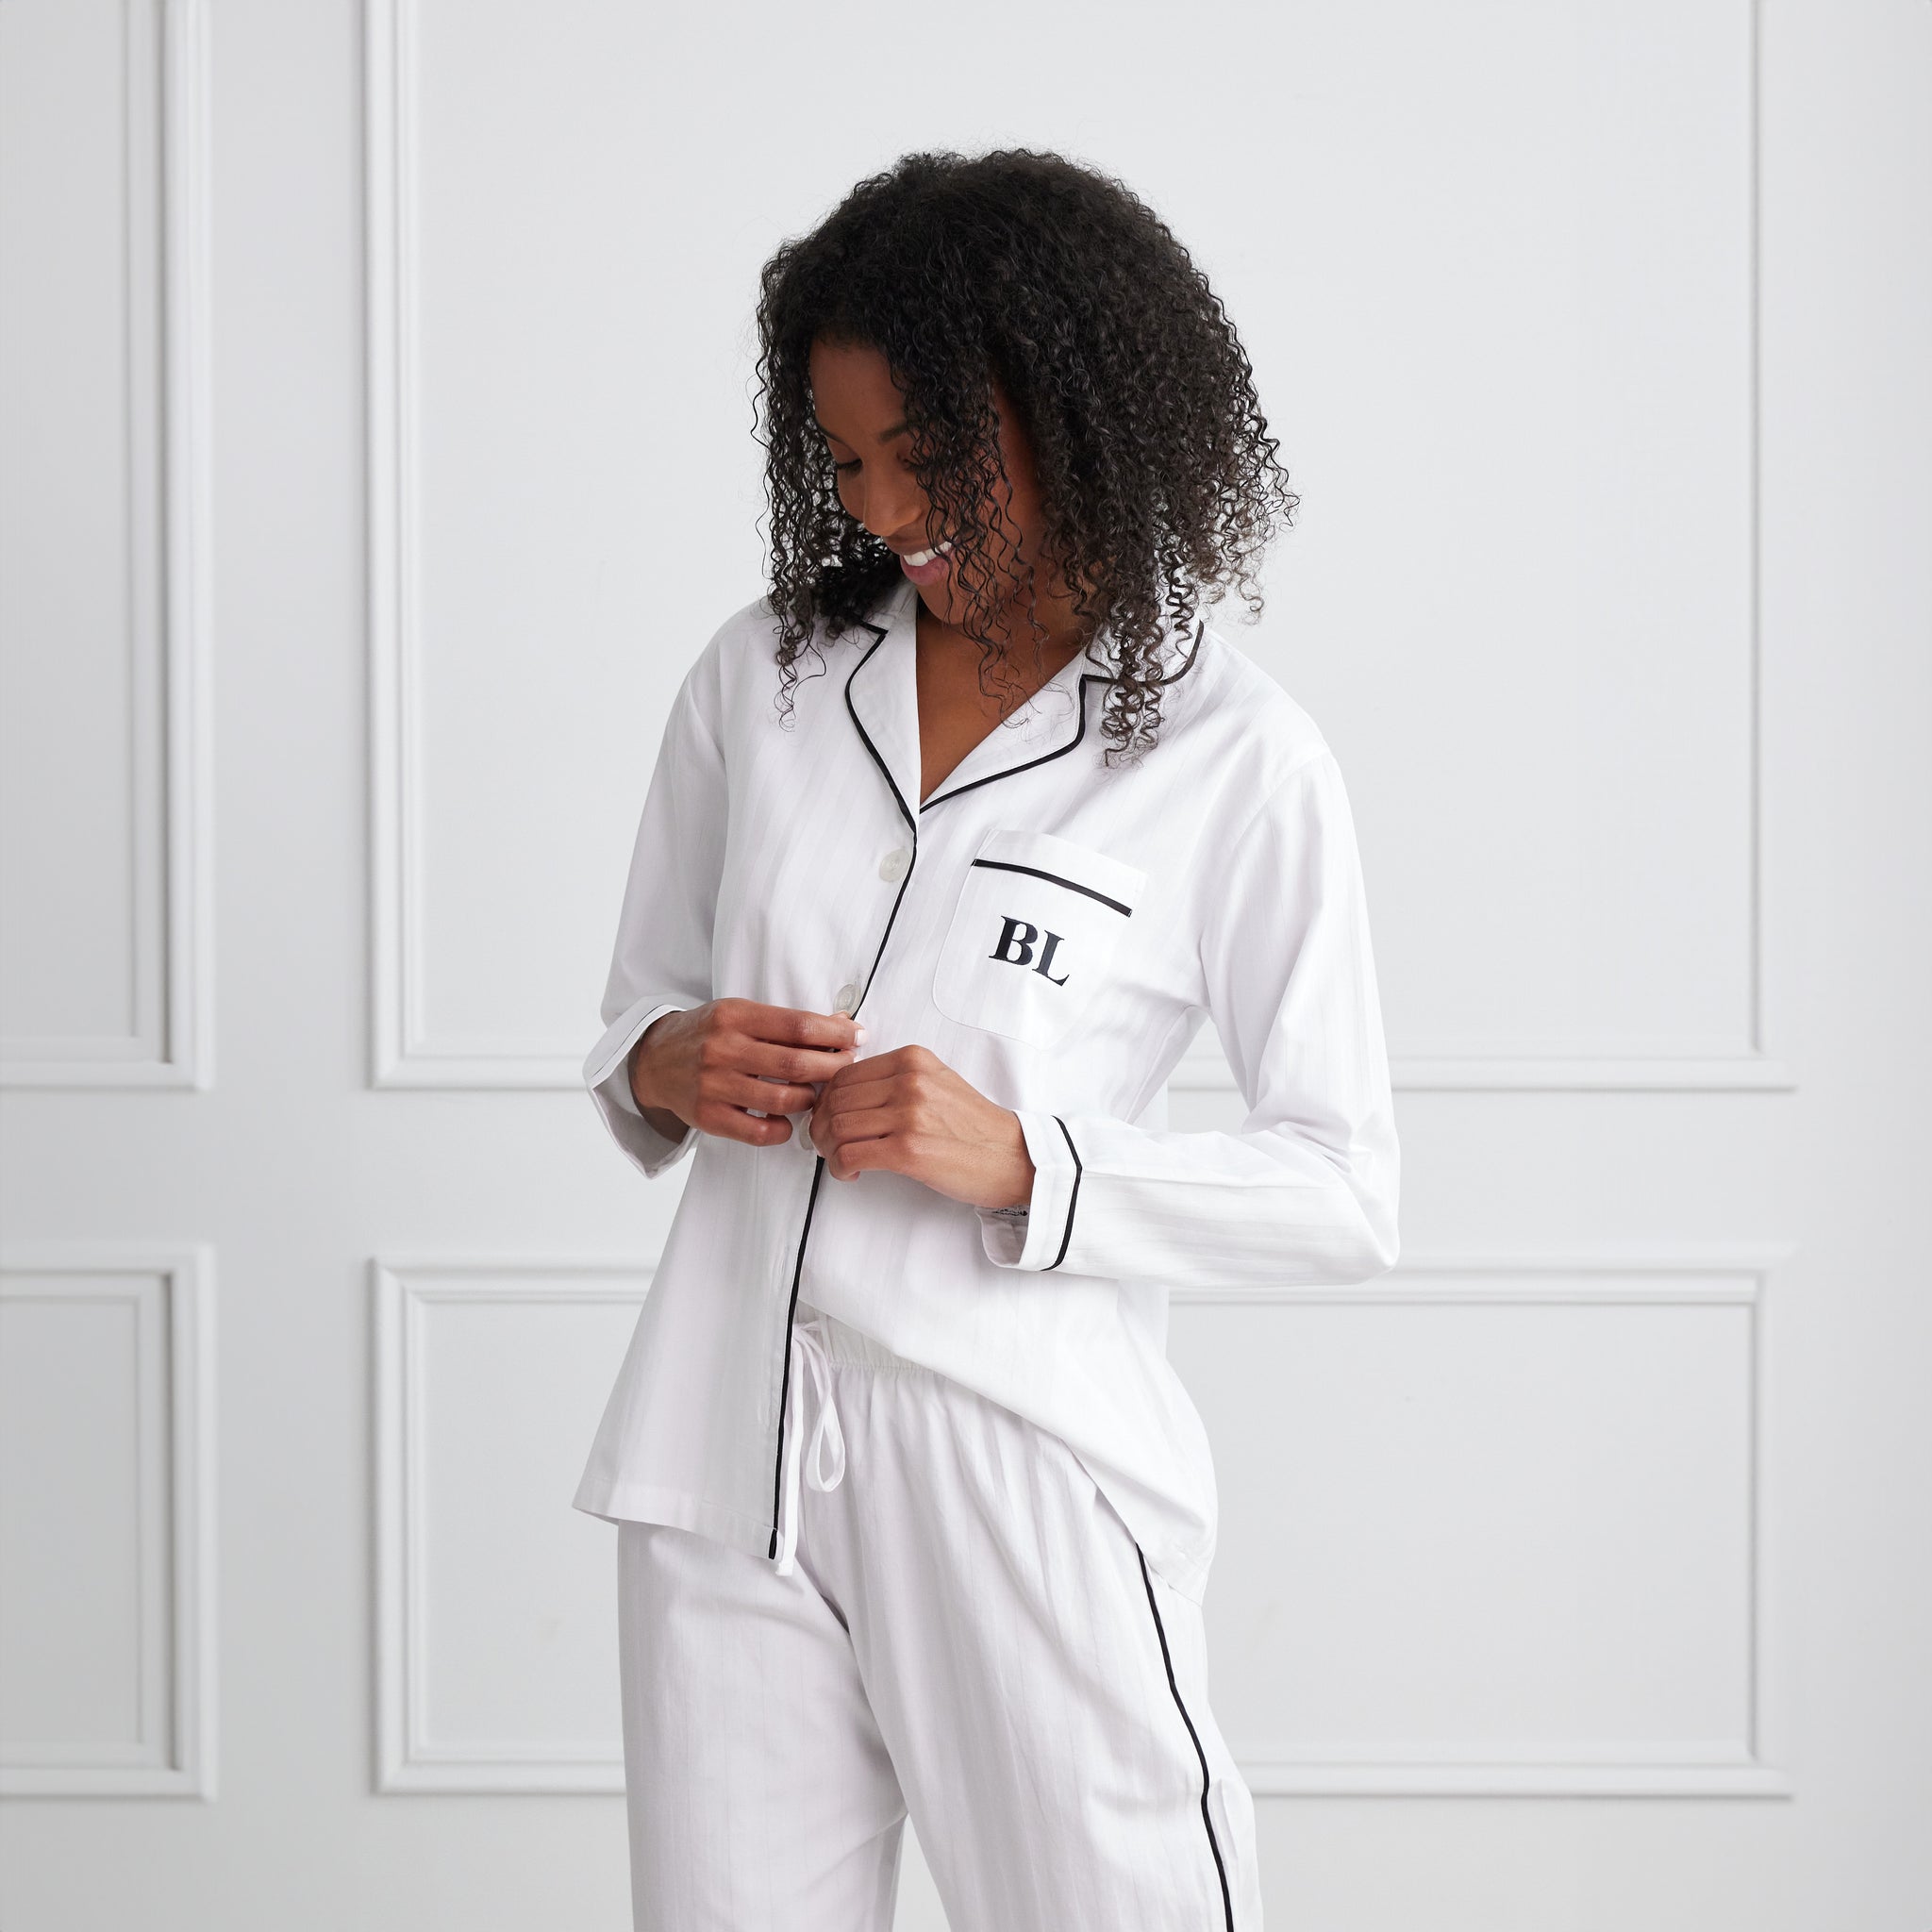 🌟Femofit Luxury Pajama Cotton Set🌟  Luxury pajamas, Cotton set, Cotton  pyjamas